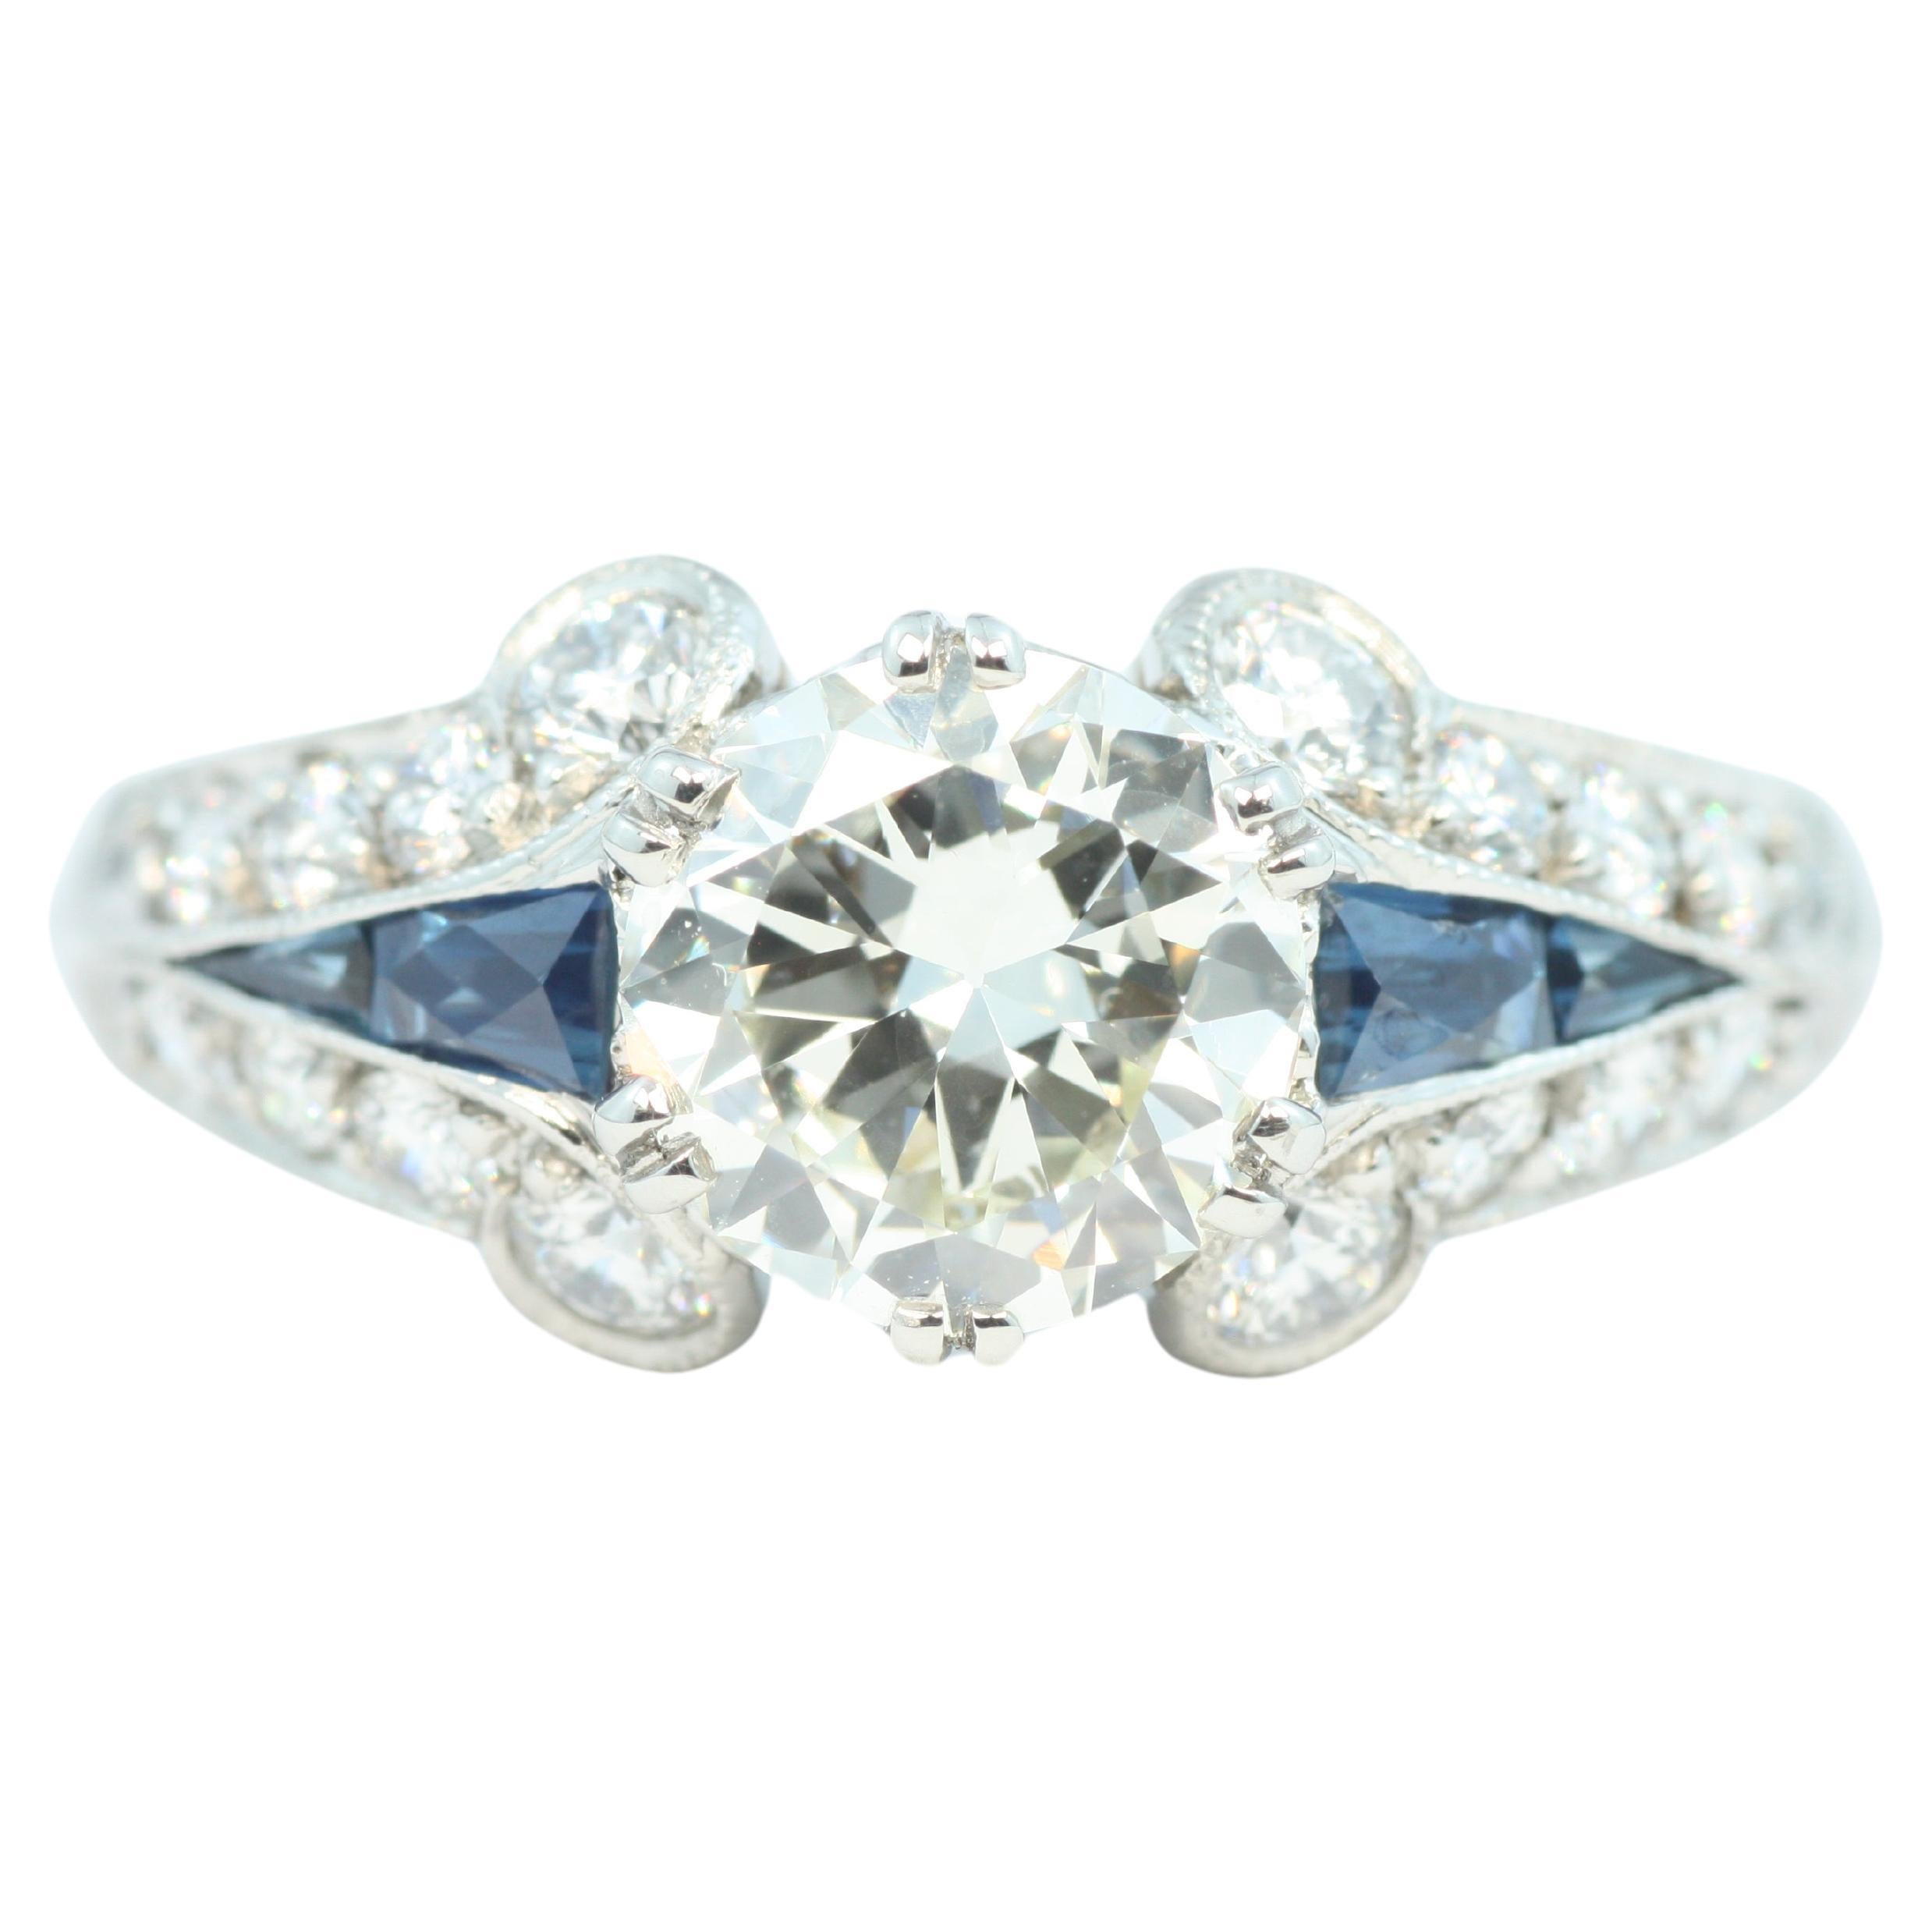 1.7 Carat Total Diamond & Sapphire Art Deco Palladium/Platinum Engagement Ring For Sale